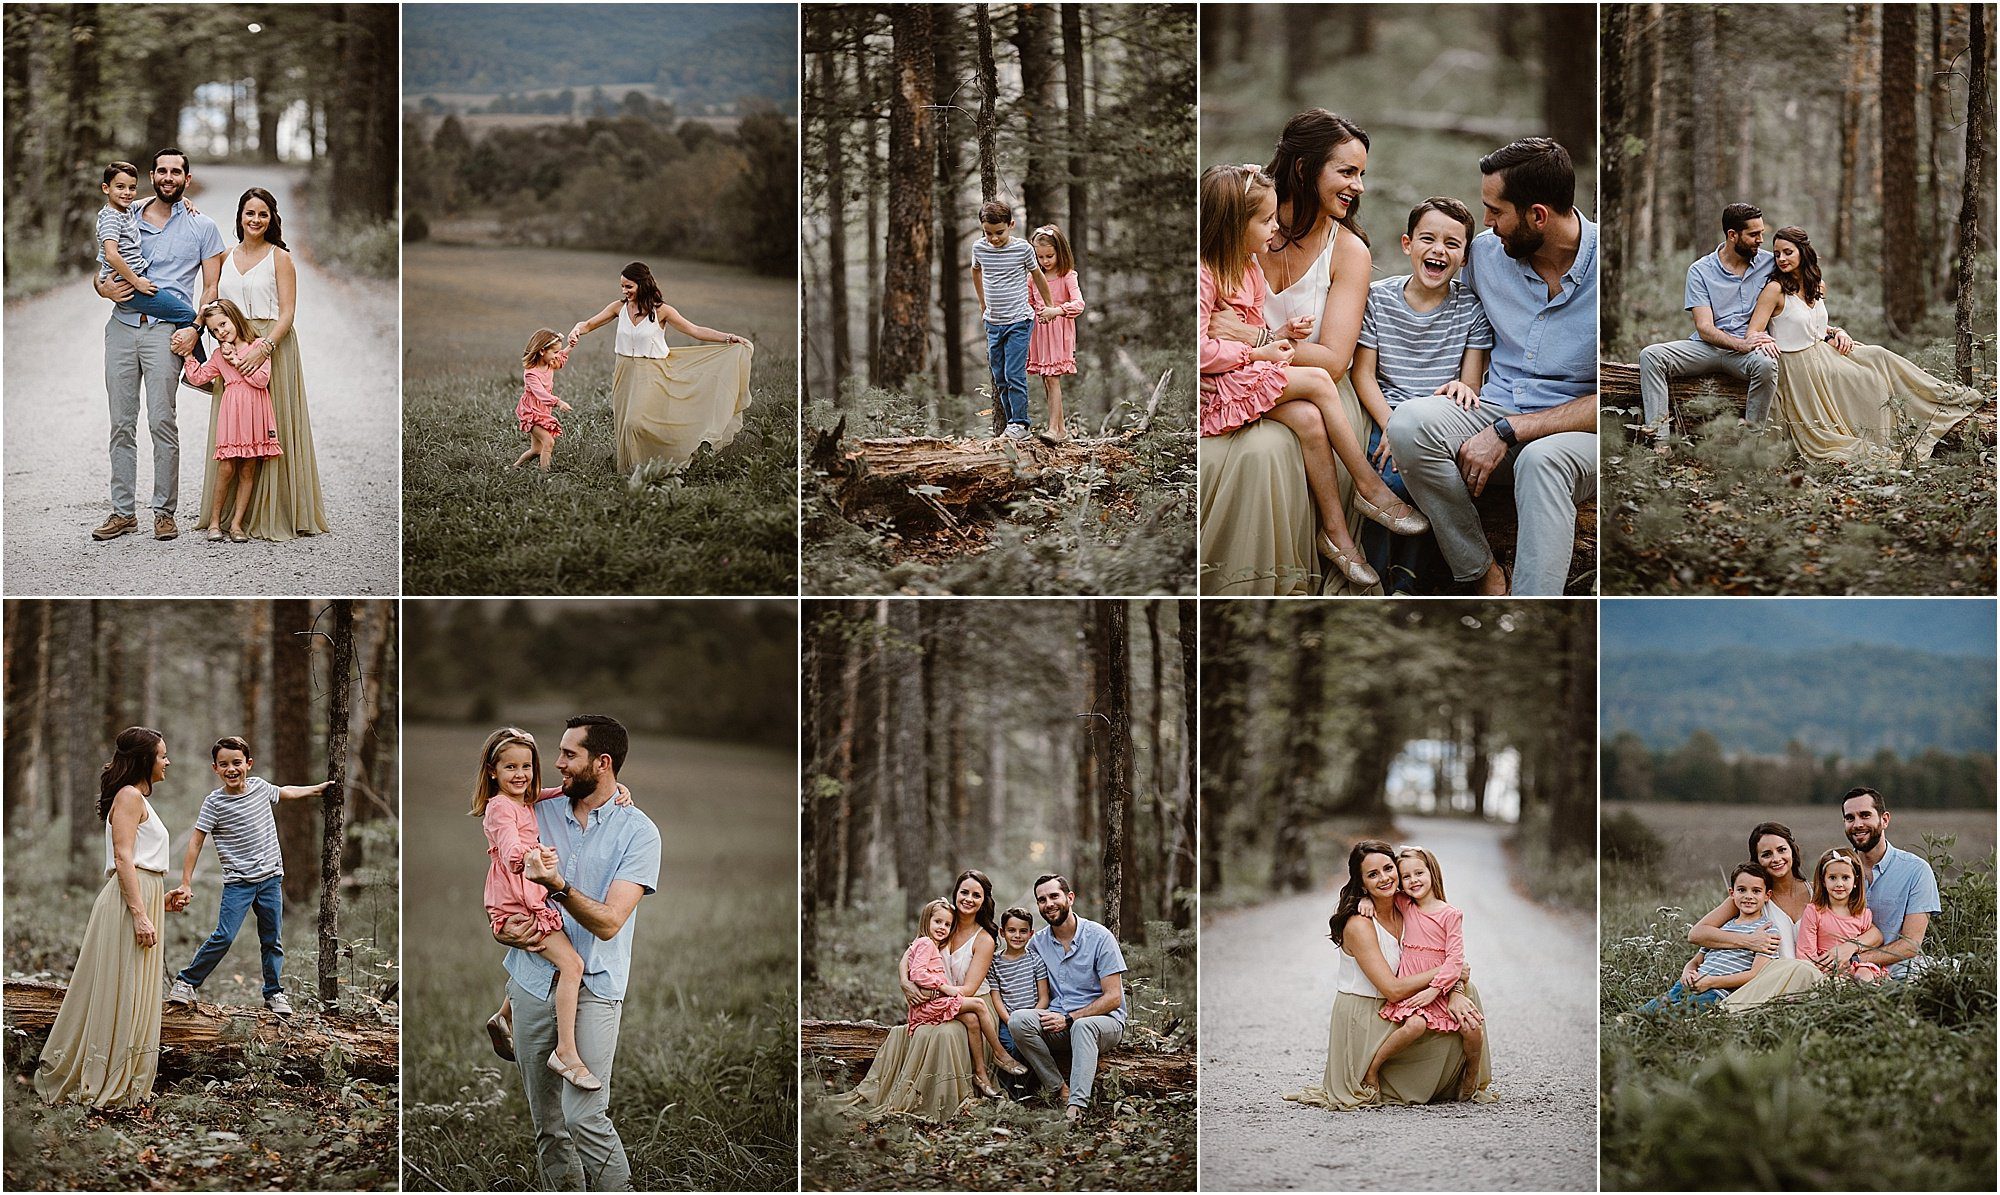 Smoky Mountain Family Photos